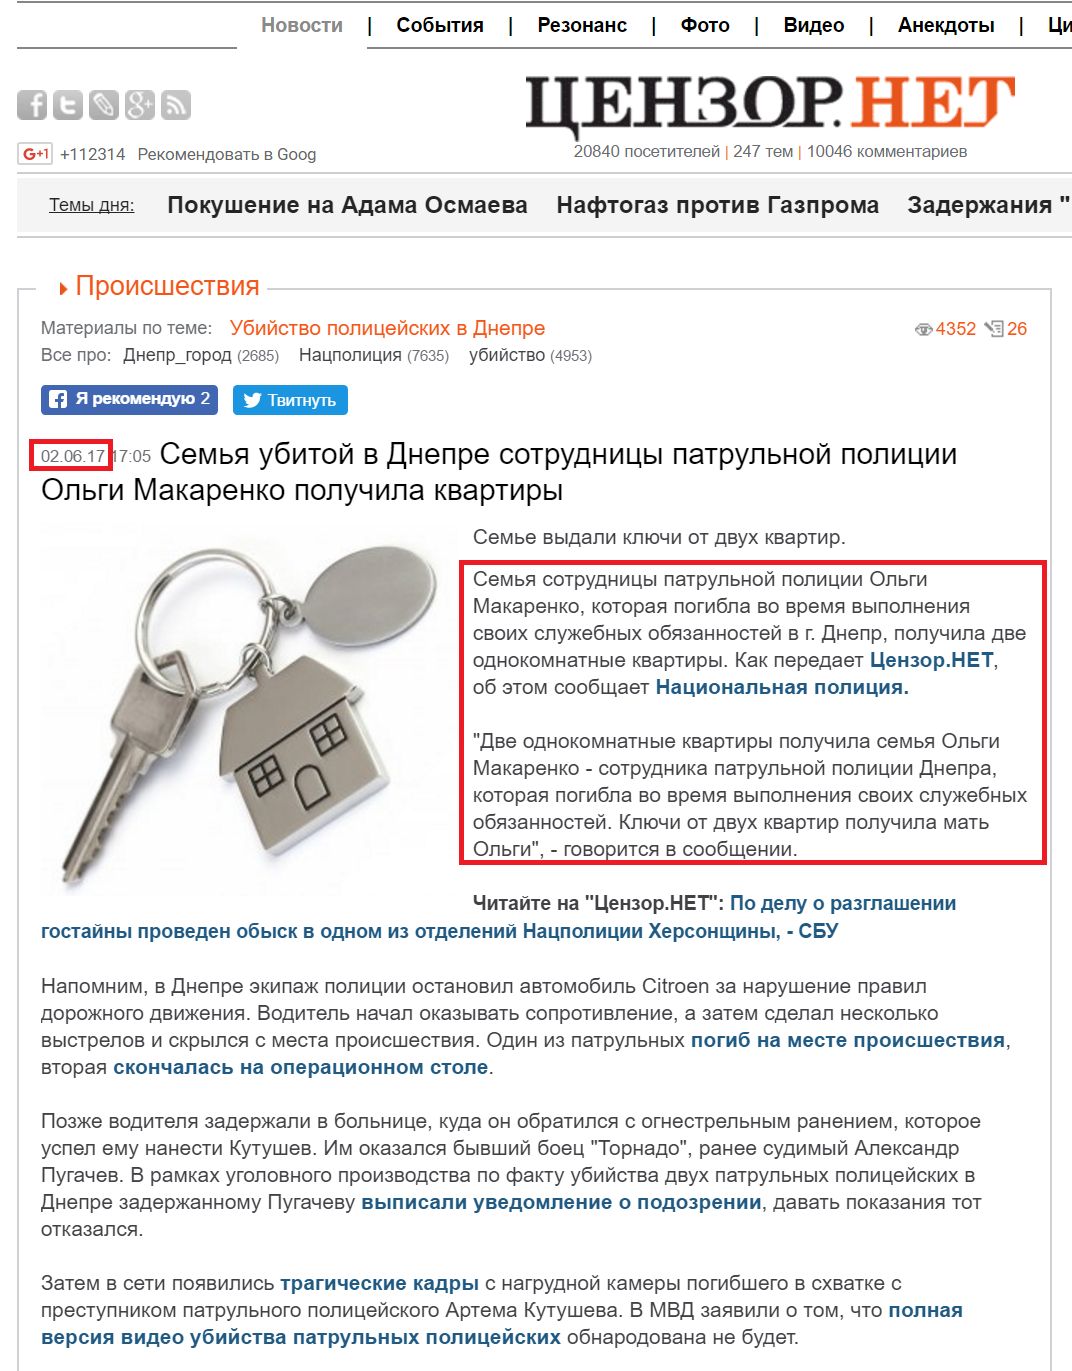 https://censor.net.ua/news/442532/semya_ubitoyi_v_dnepre_sotrudnitsy_patrulnoyi_politsii_olgi_makarenko_poluchila_kvartiry